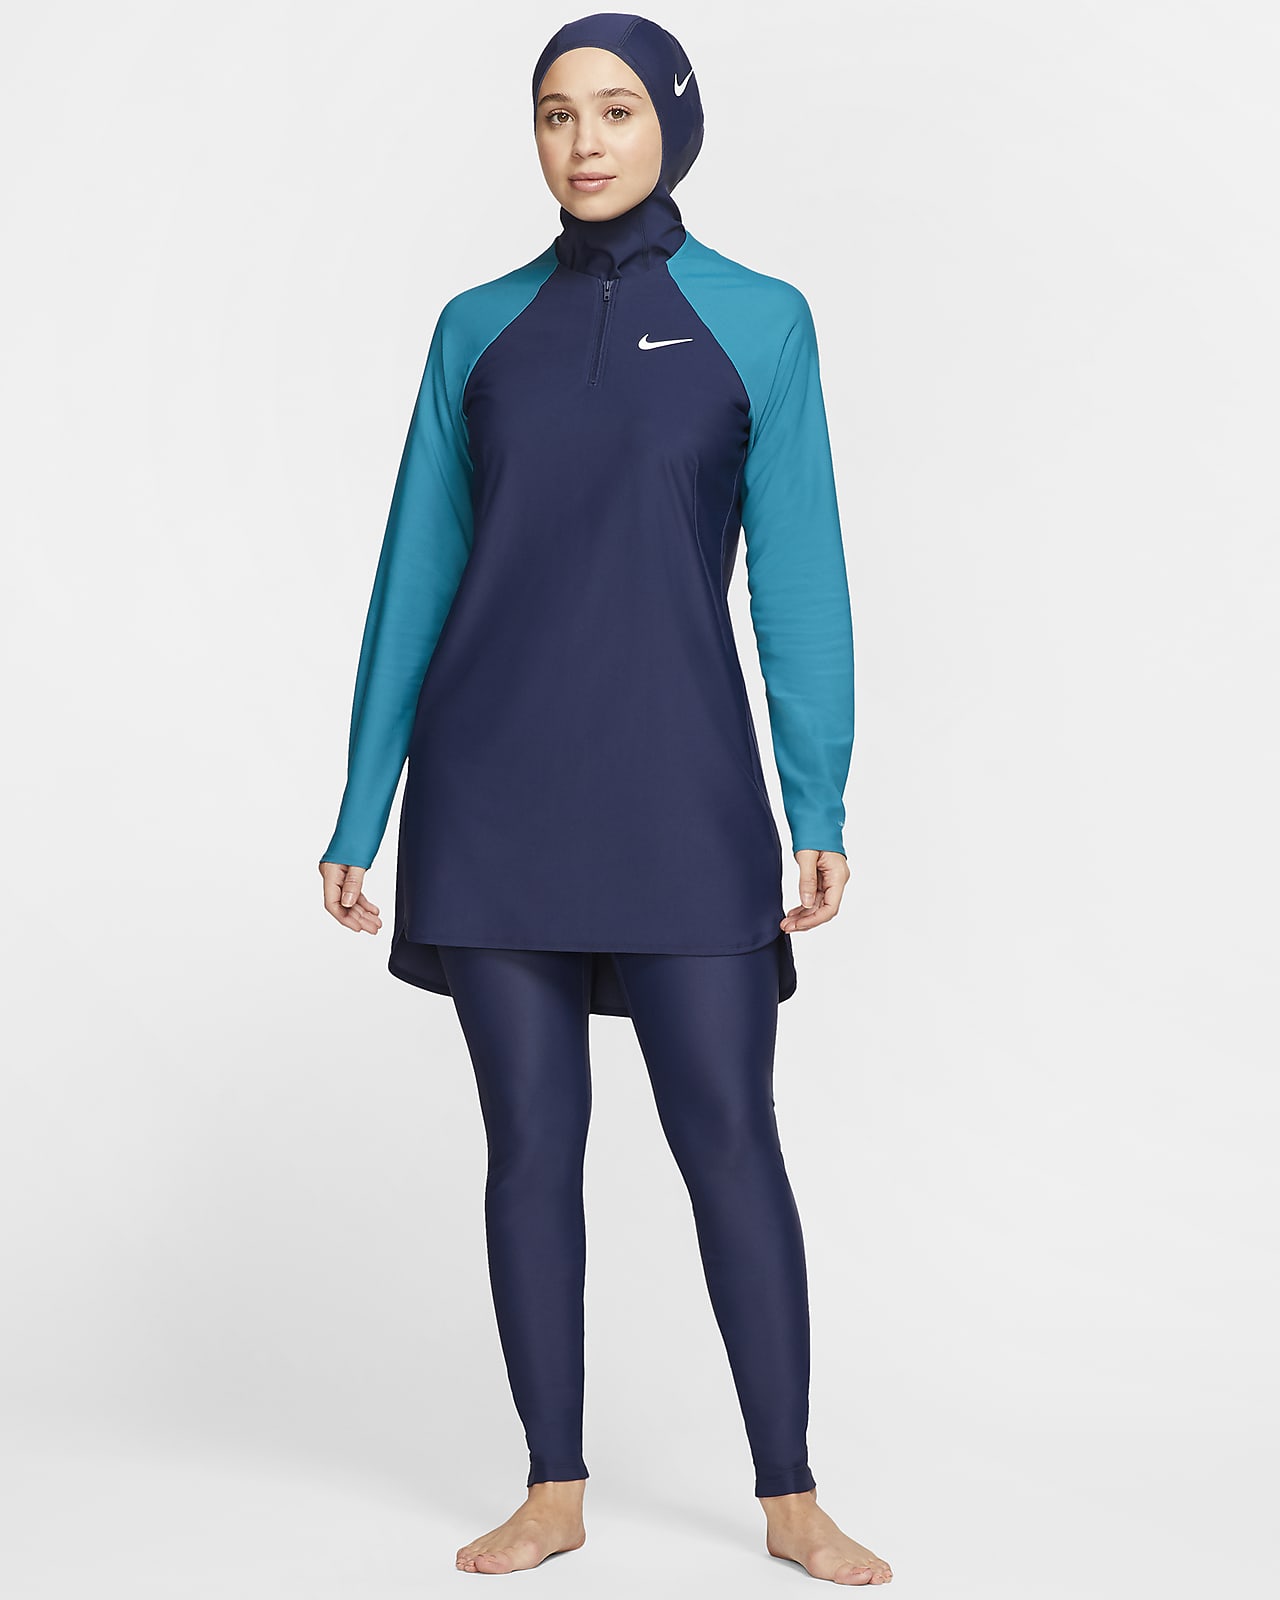 Γυναικείο κολάν κολύμβησης πλήρους κάλυψης σε στενή γραμμή Nike Victory